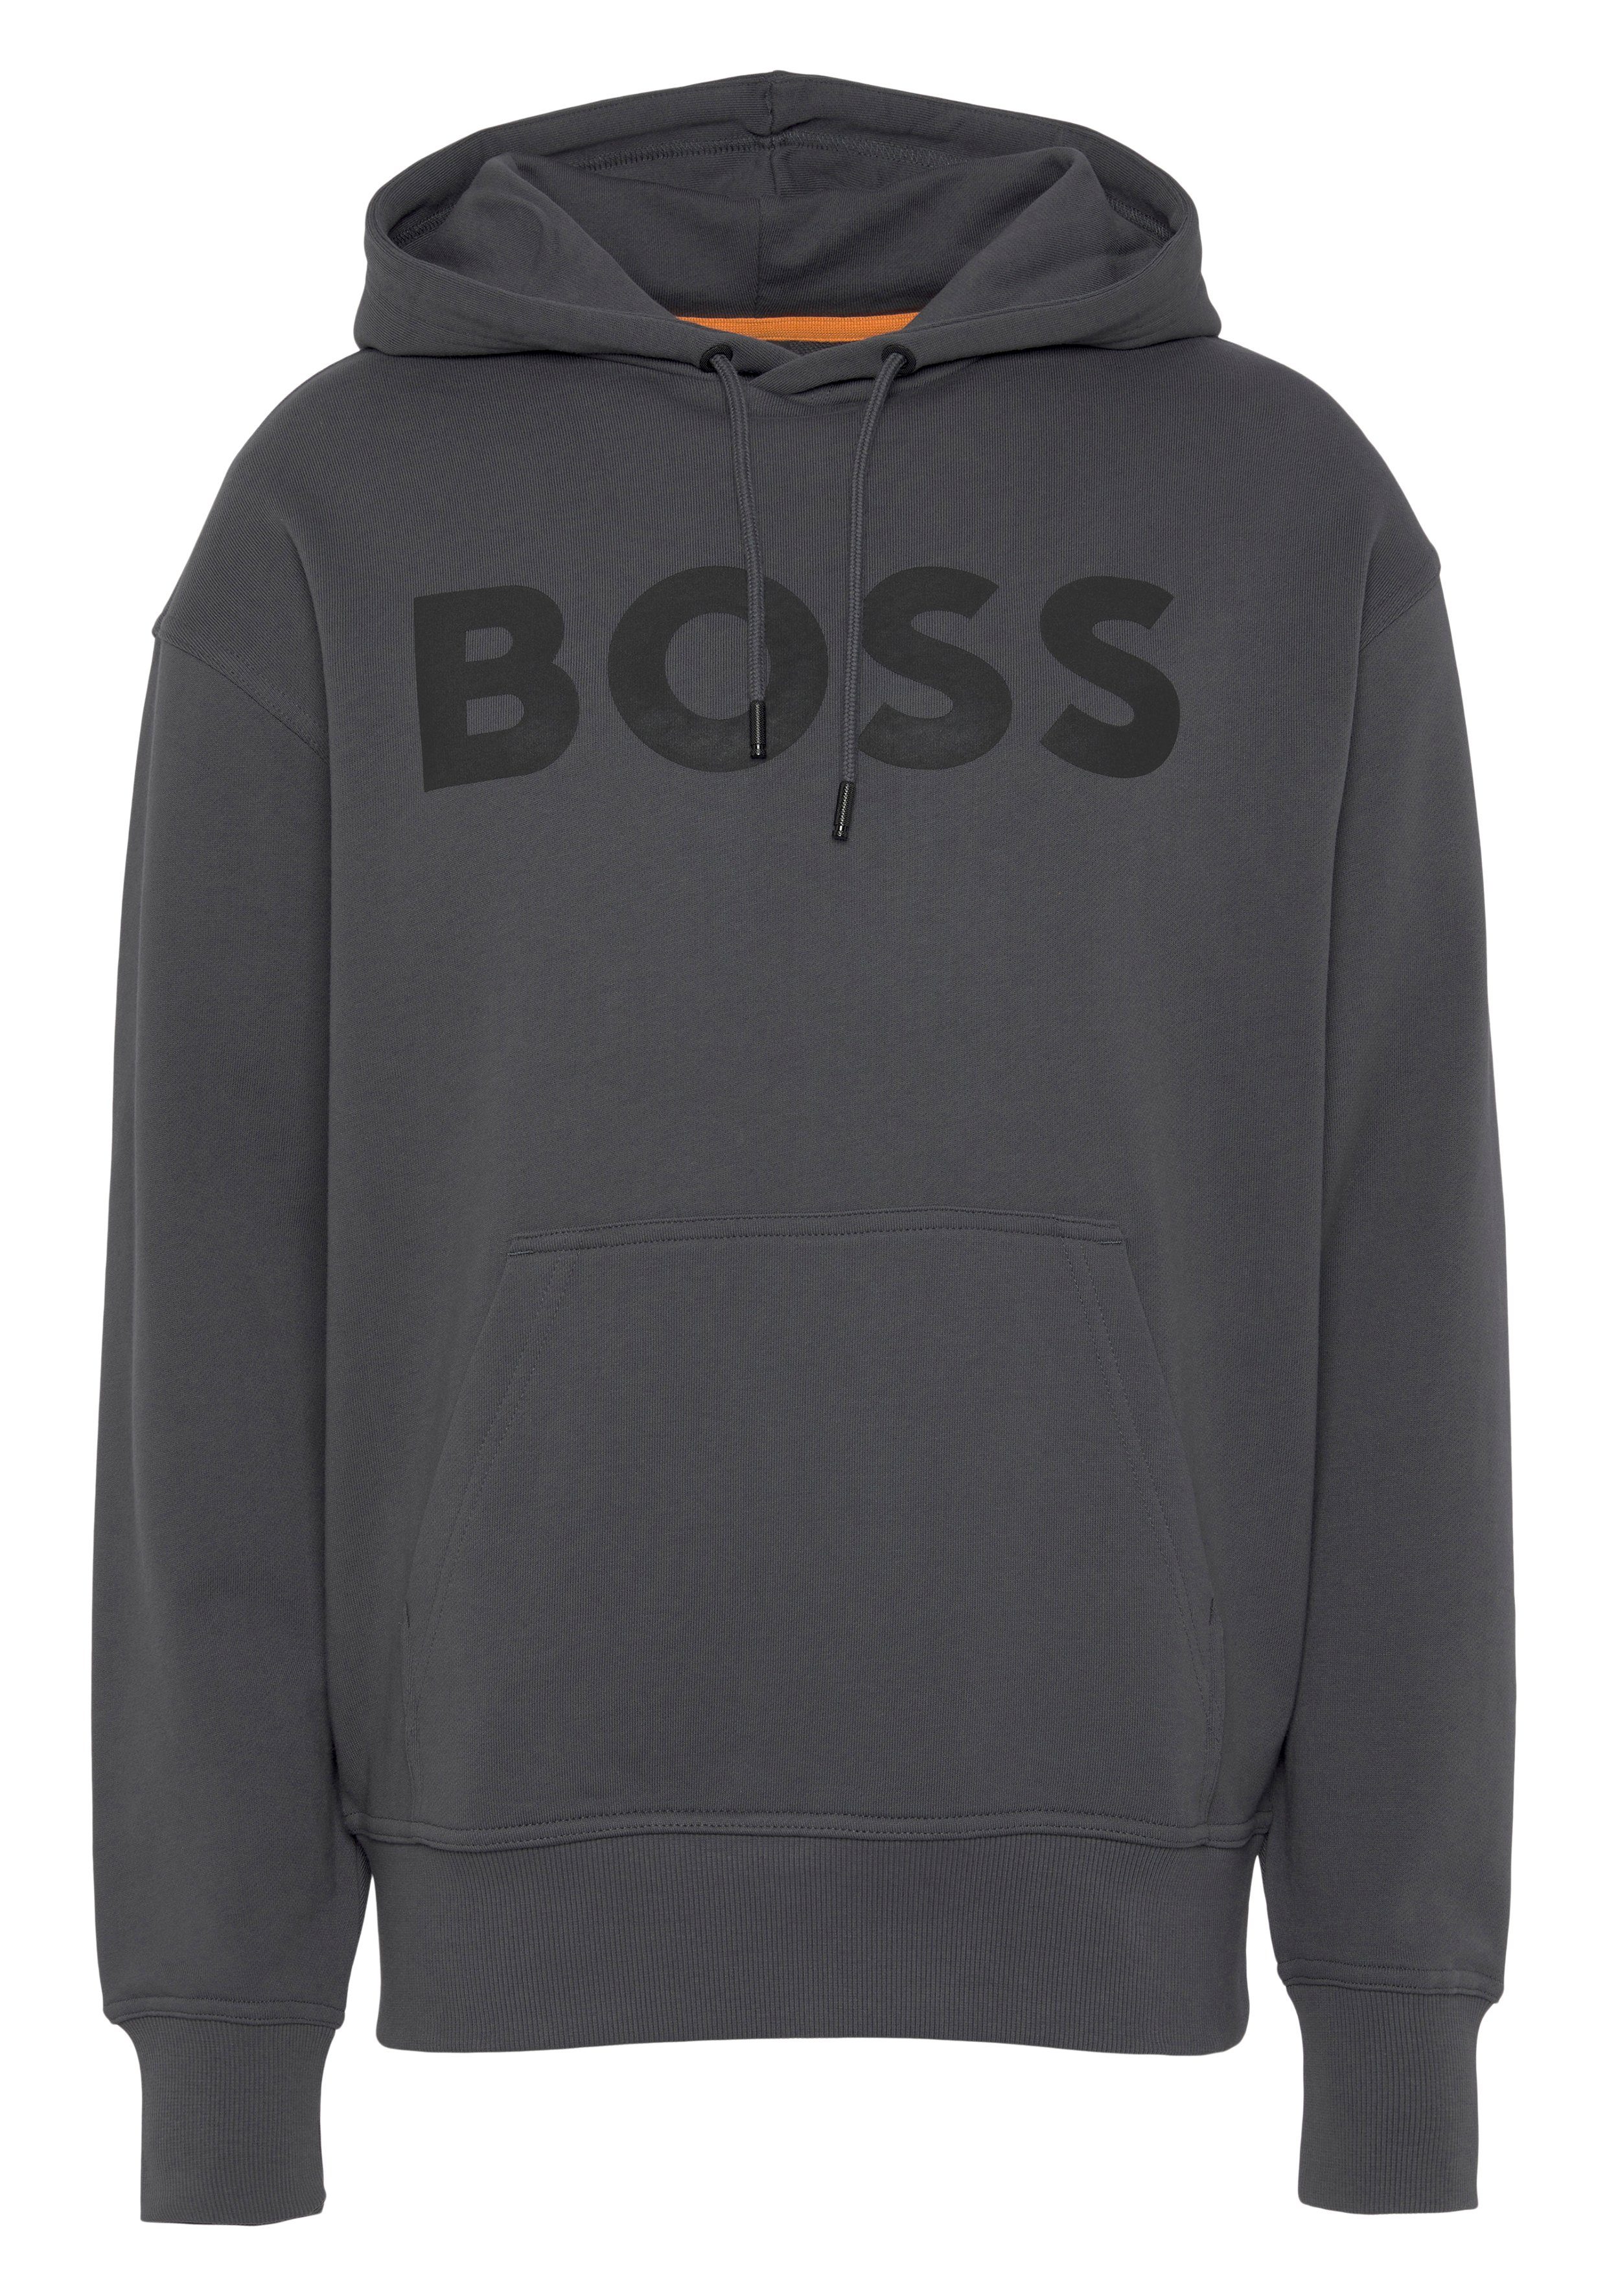 ORANGE Sweatshirt dark WebasicHood mit Logodruck grey weißem BOSS